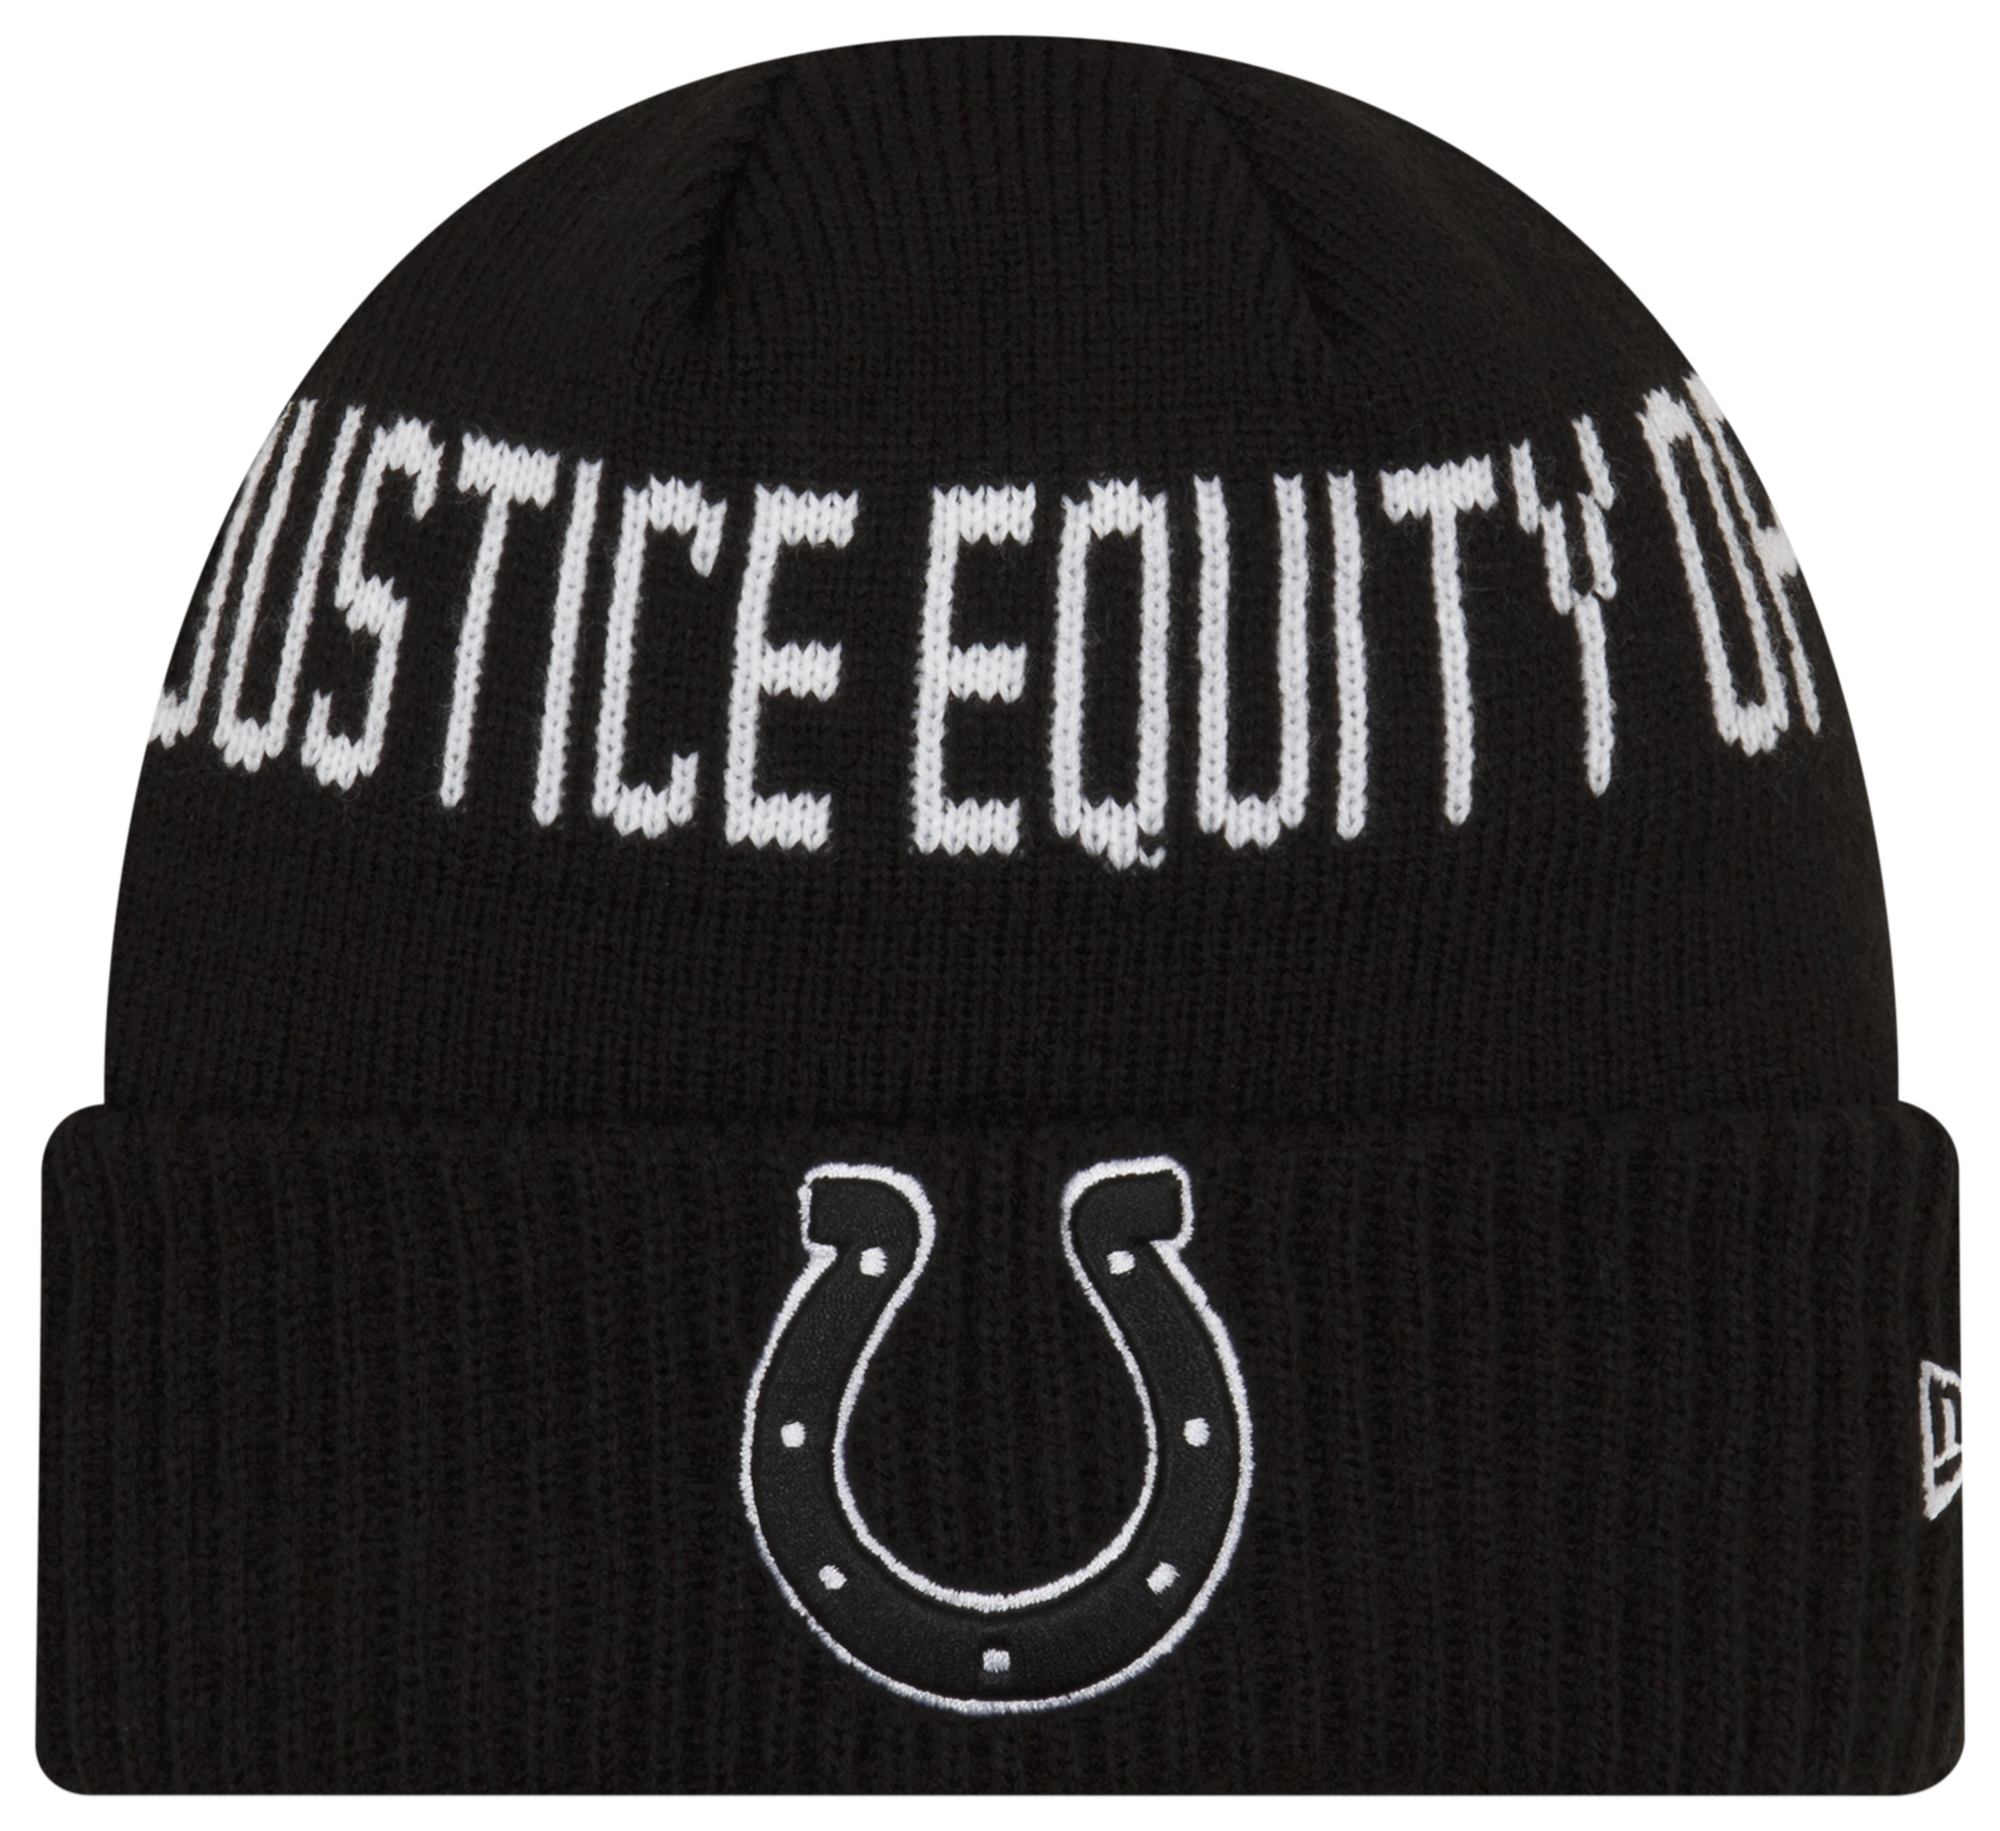 New Era Colts Social Justice Knit Cap